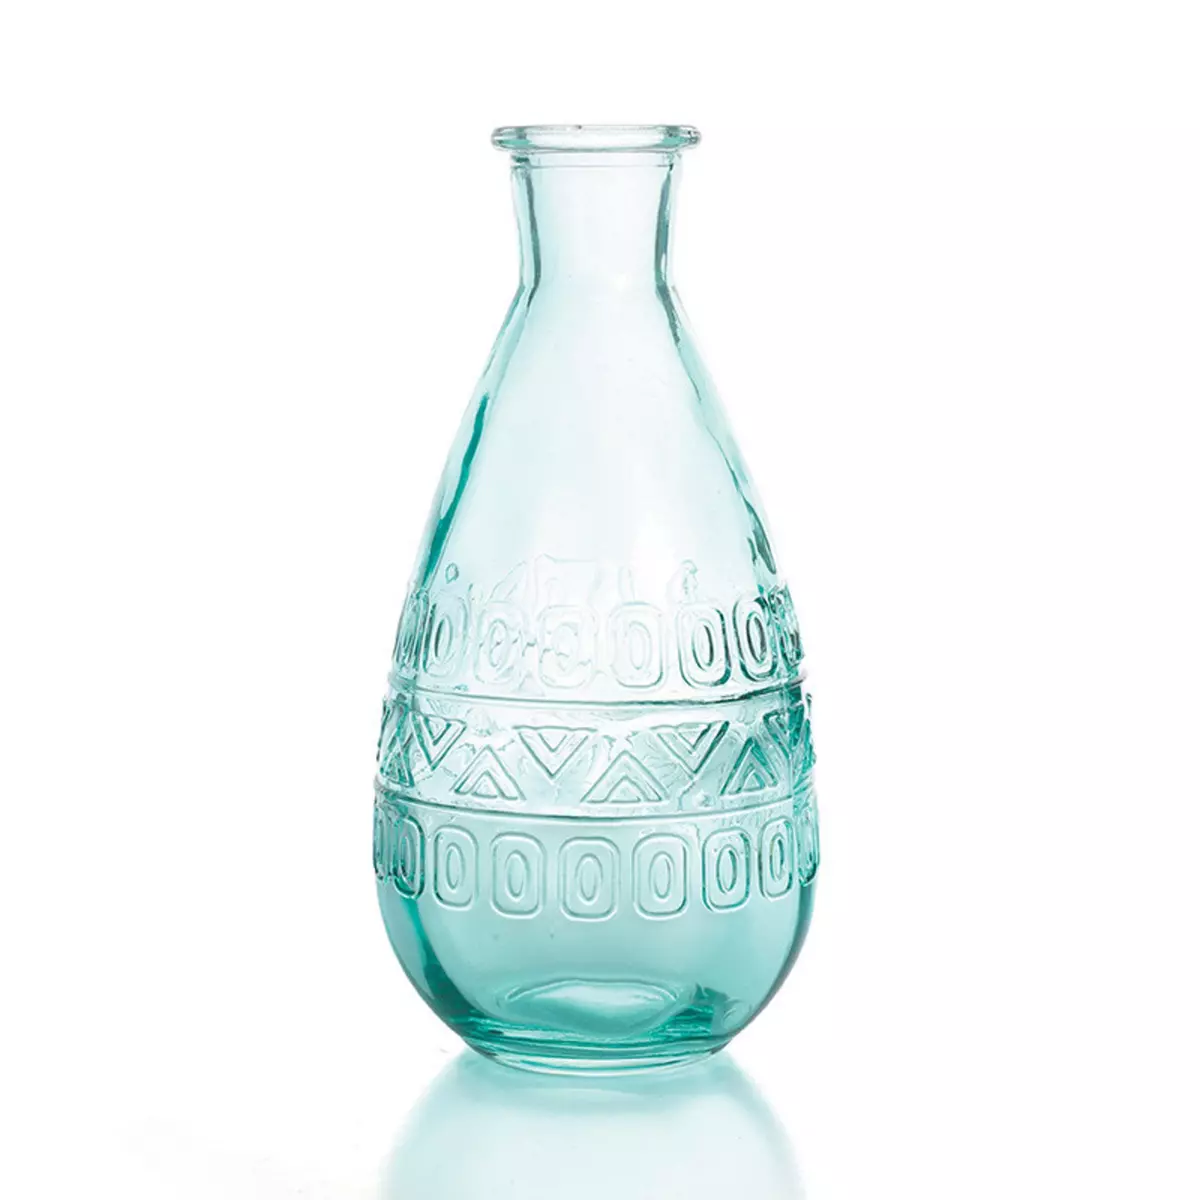 Graine créative Vase Vintage en verre à reliefs - Bleu - 7,5 x 15,8 cm